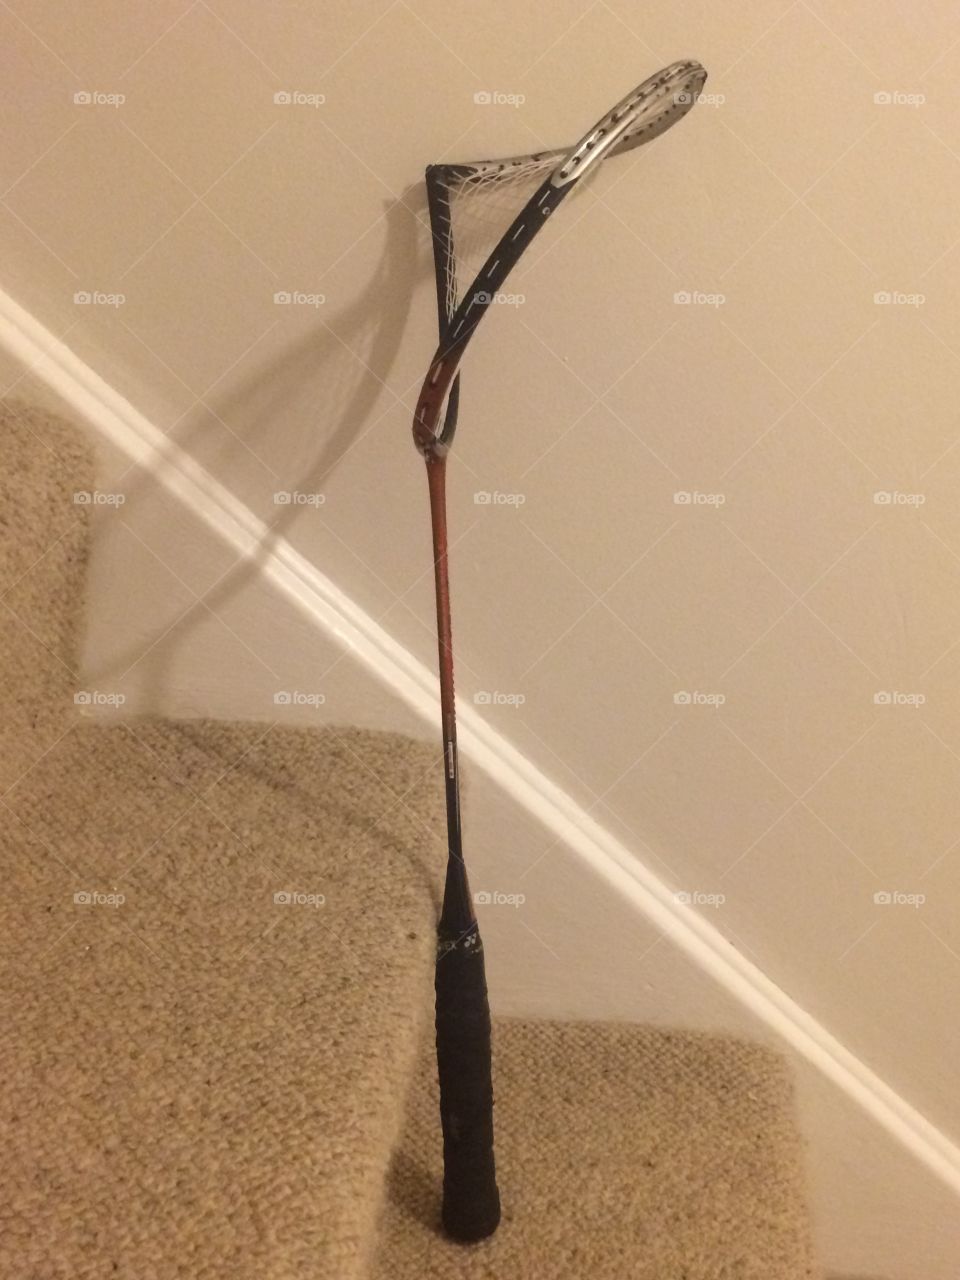 Broken badminton racquet frame